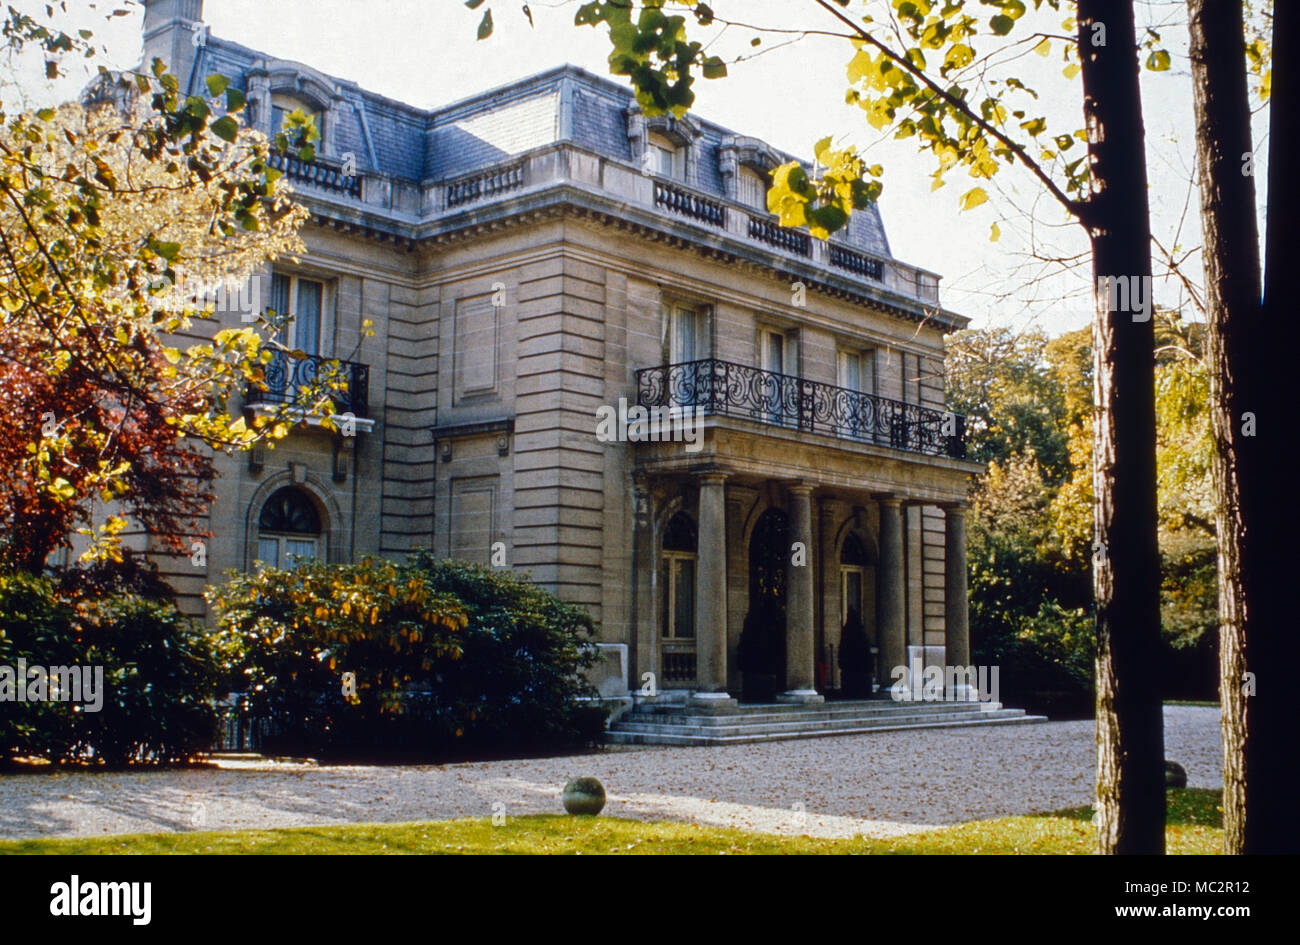 Das Haus der Herzogin von Windsor, Wallis Simpson, im Bois de Boulogne bei Paris, Frankreich 1974. The mansion of Wallis Simpson, Duchess of Windsor, at Bois de Boulogne near Paris, France 1974. Stock Photo